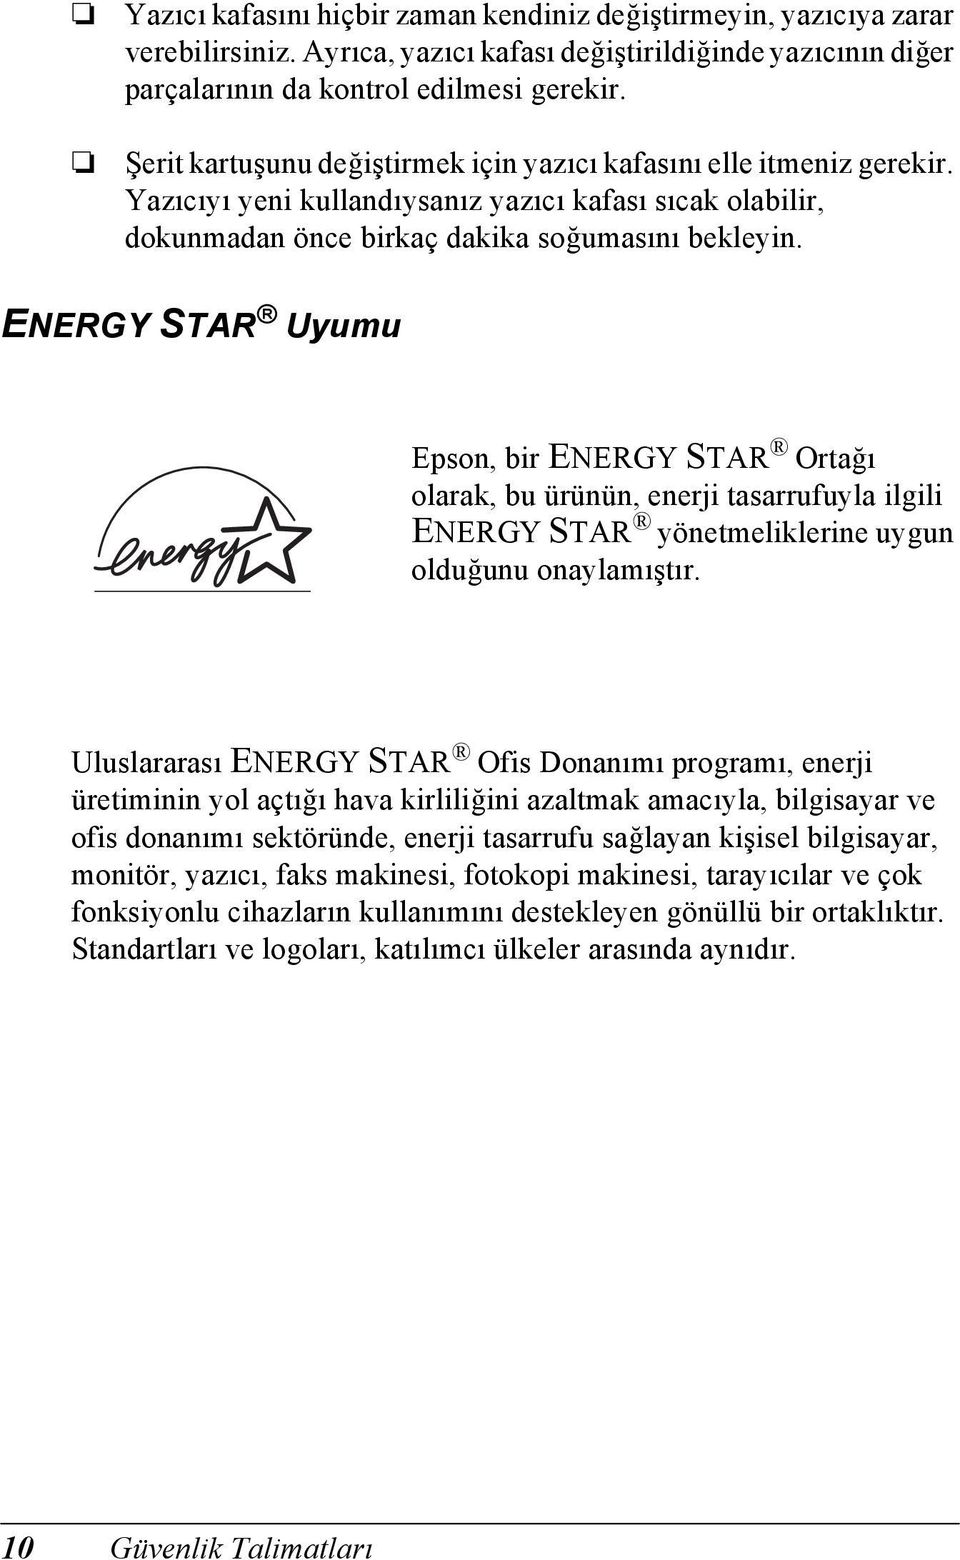 ENERGY STR Uyumu Epson, bir ENERGY STR Ortağı olarak, bu ürünün, enerji tasarrufuyla ilgili ENERGY STR yönetmeliklerine uygun olduğunu onaylamıştır.